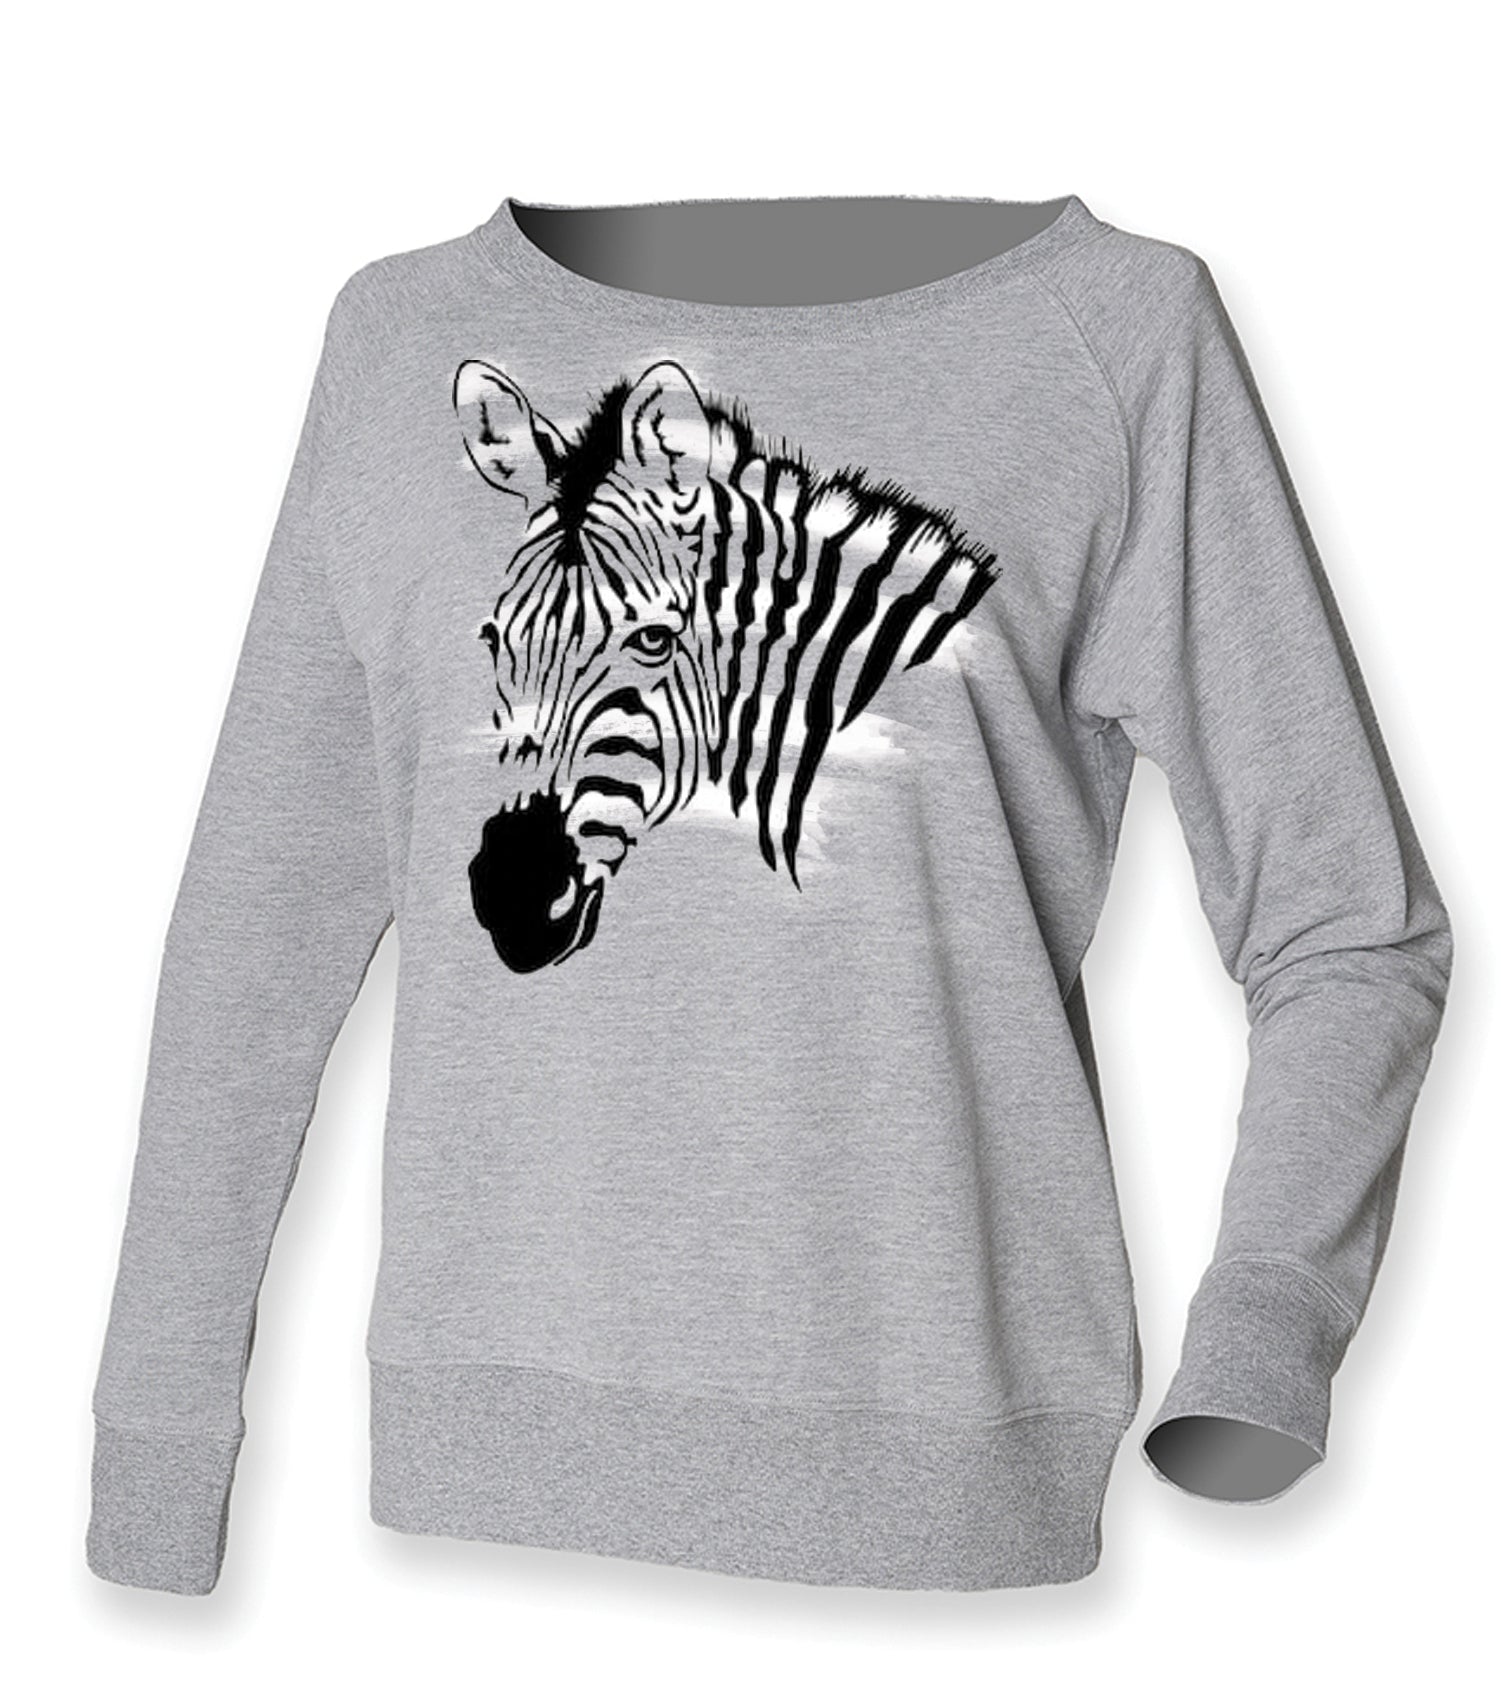 Zebra face jumper